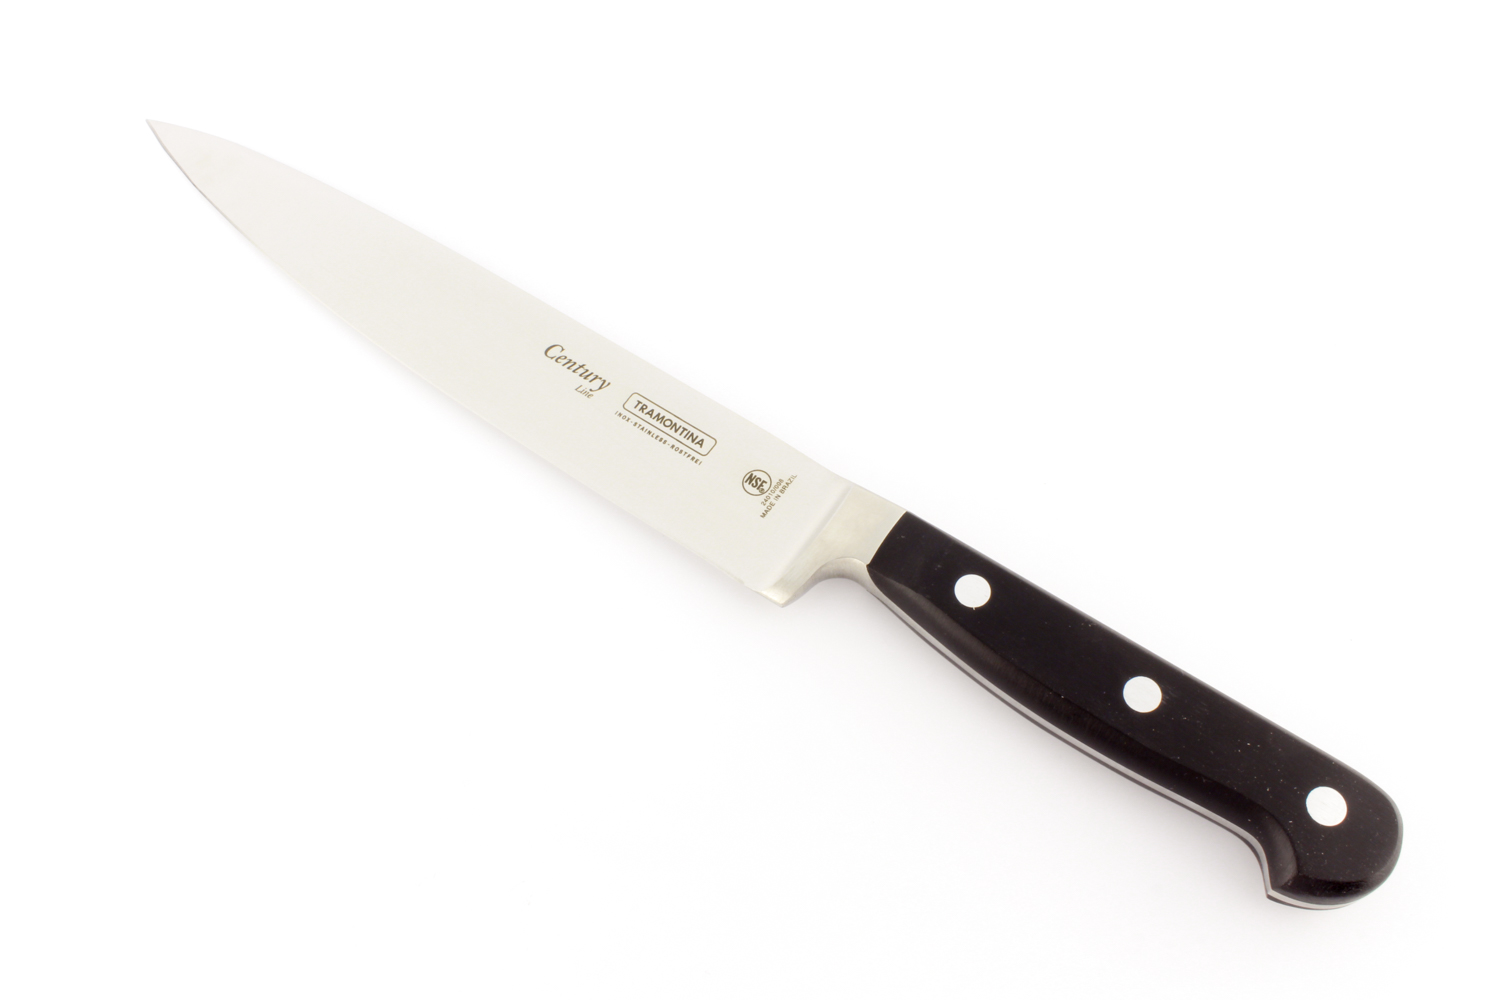 Купить нож CENTURY поварской Tramontina 24010/108 в один клик. Доставка по РФ. Выгодные цены.